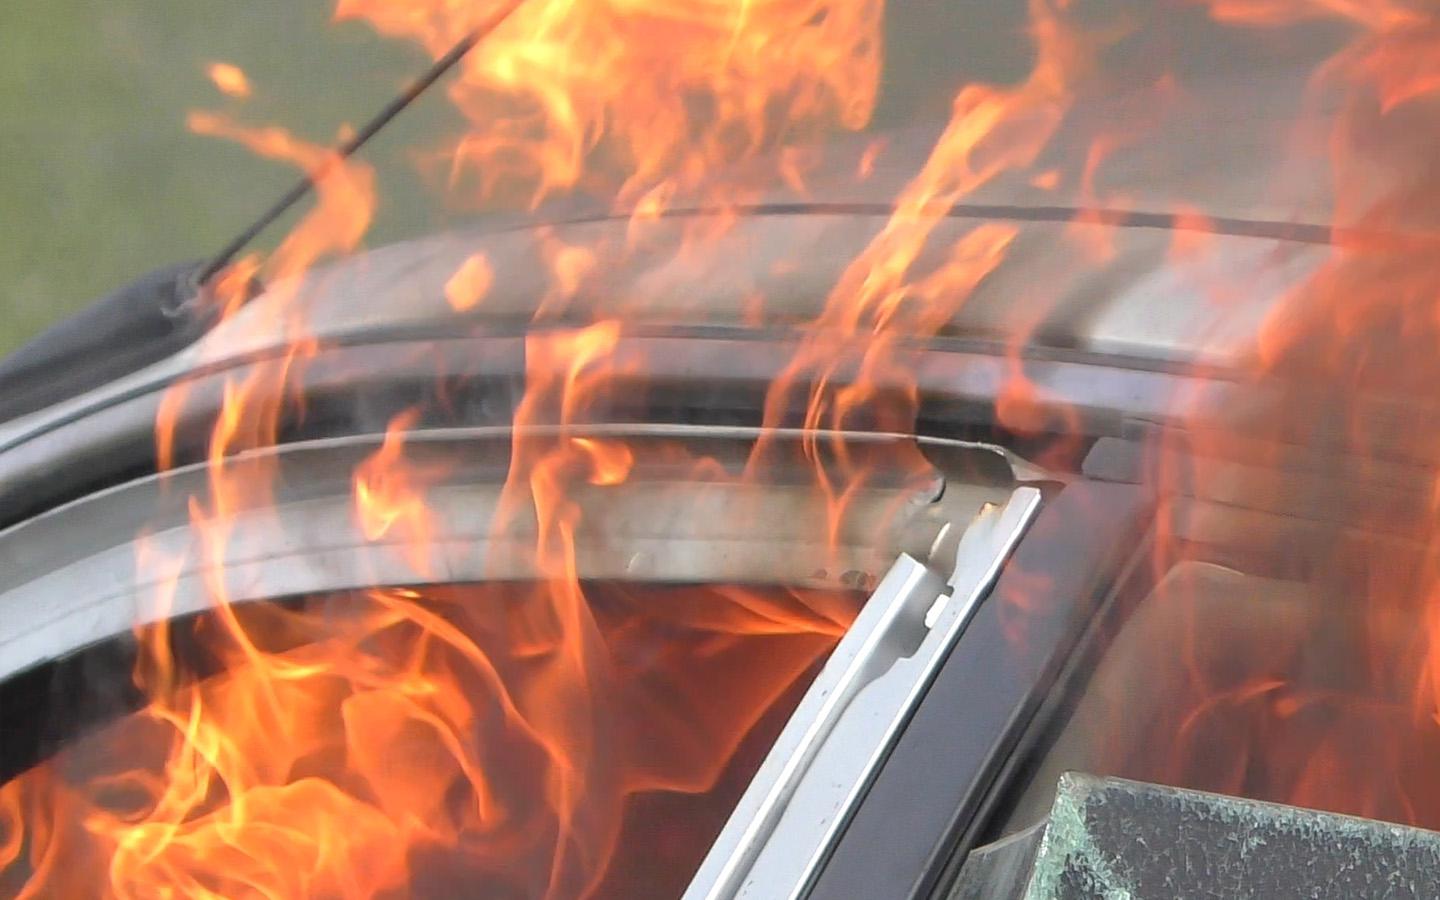 GAC обещал выяснить причину возгорания своего автомобиля в России